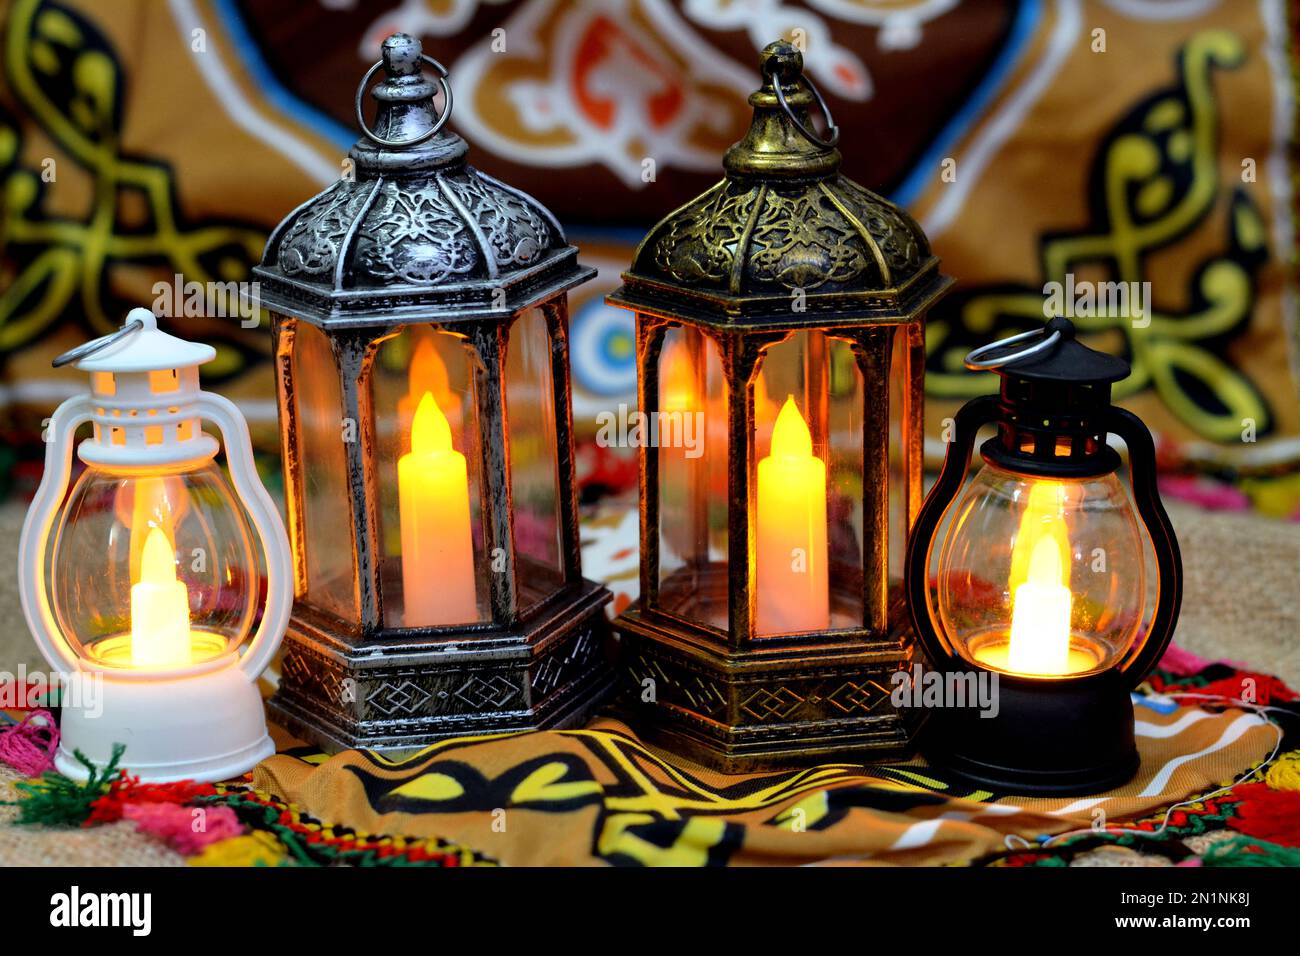 https://c8.alamy.com/compfr/2n1nk8j/ramadan-lampe-lanterne-ou-ramadan-fanous-sur-un-fond-de-ramadan-comme-une-celebration-festive-des-jours-de-jeune-islamique-dans-les-pays-islamiques-arabes-de-l-ile-2n1nk8j.jpg